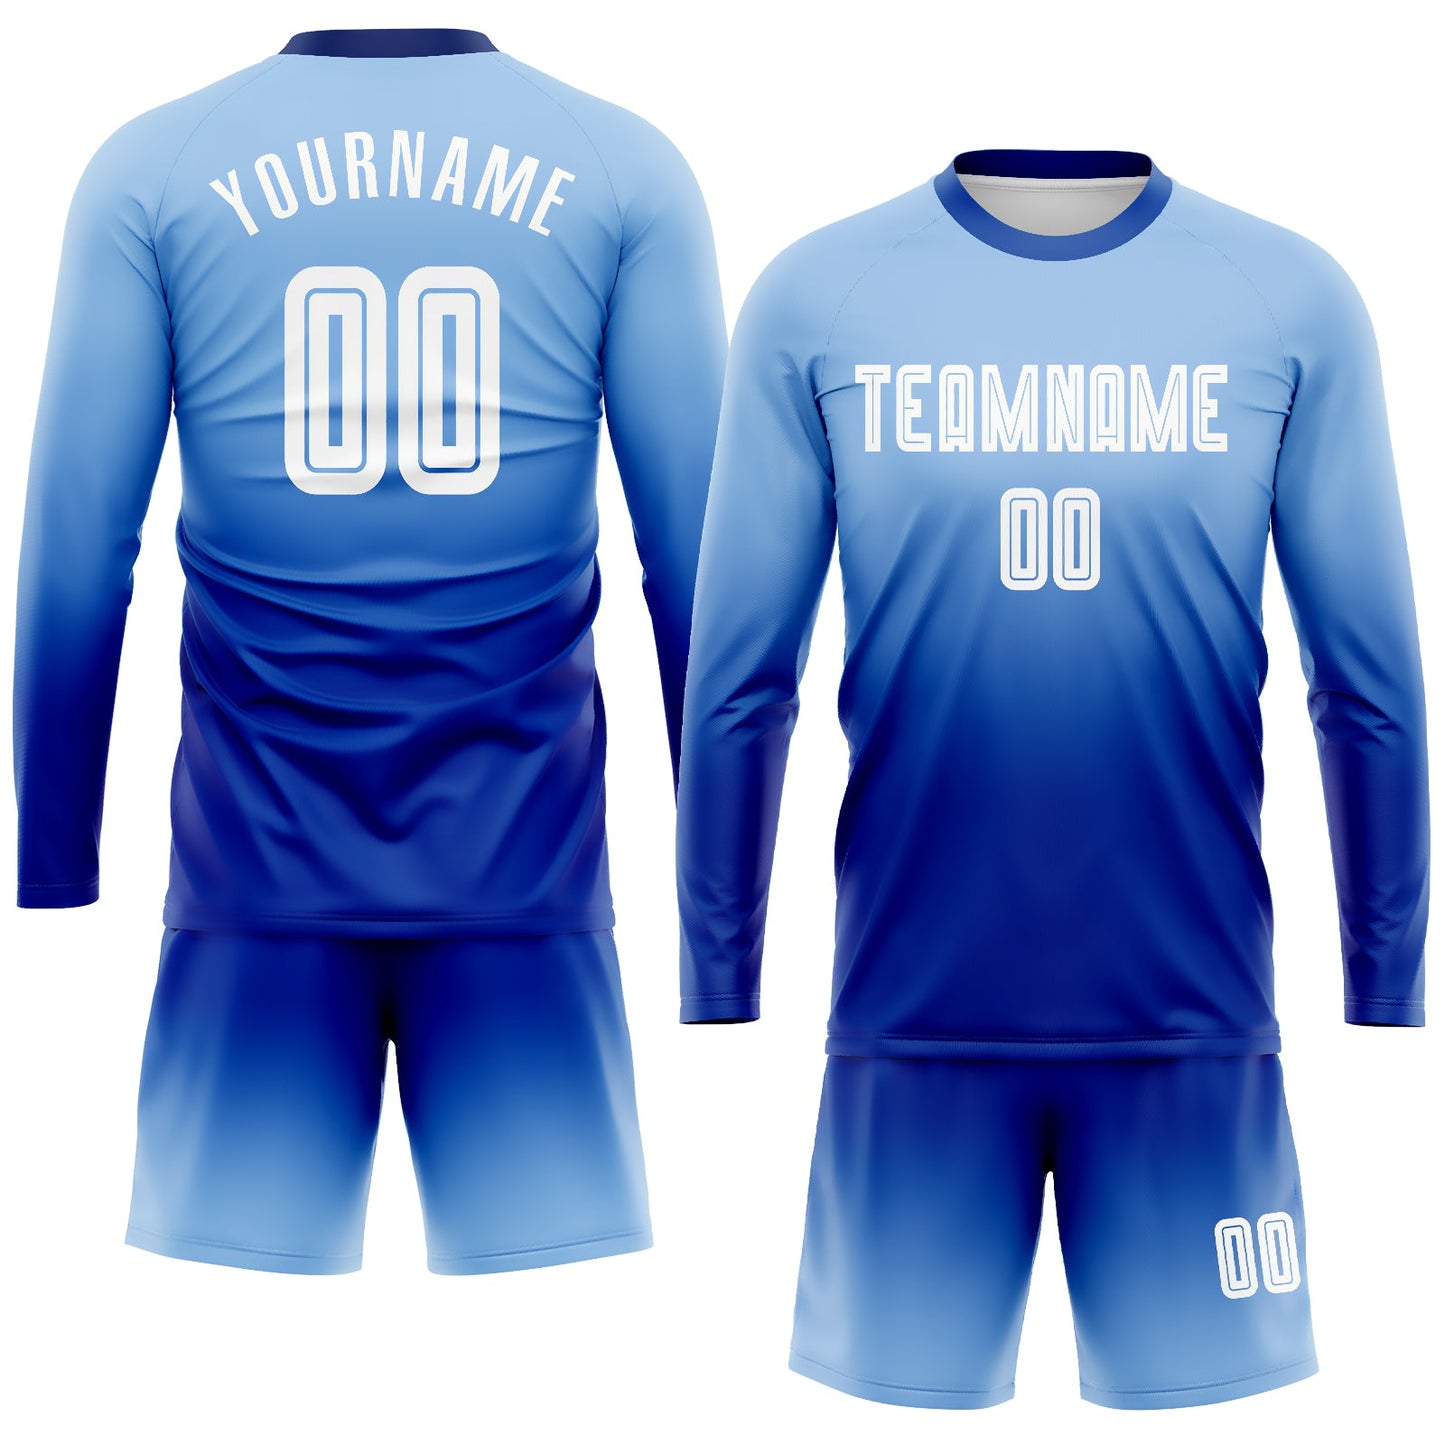 Maillot d'uniforme de football à manches longues, personnalisé, bleu clair, blanc, Royal, par Sublimation, à la mode, fondu